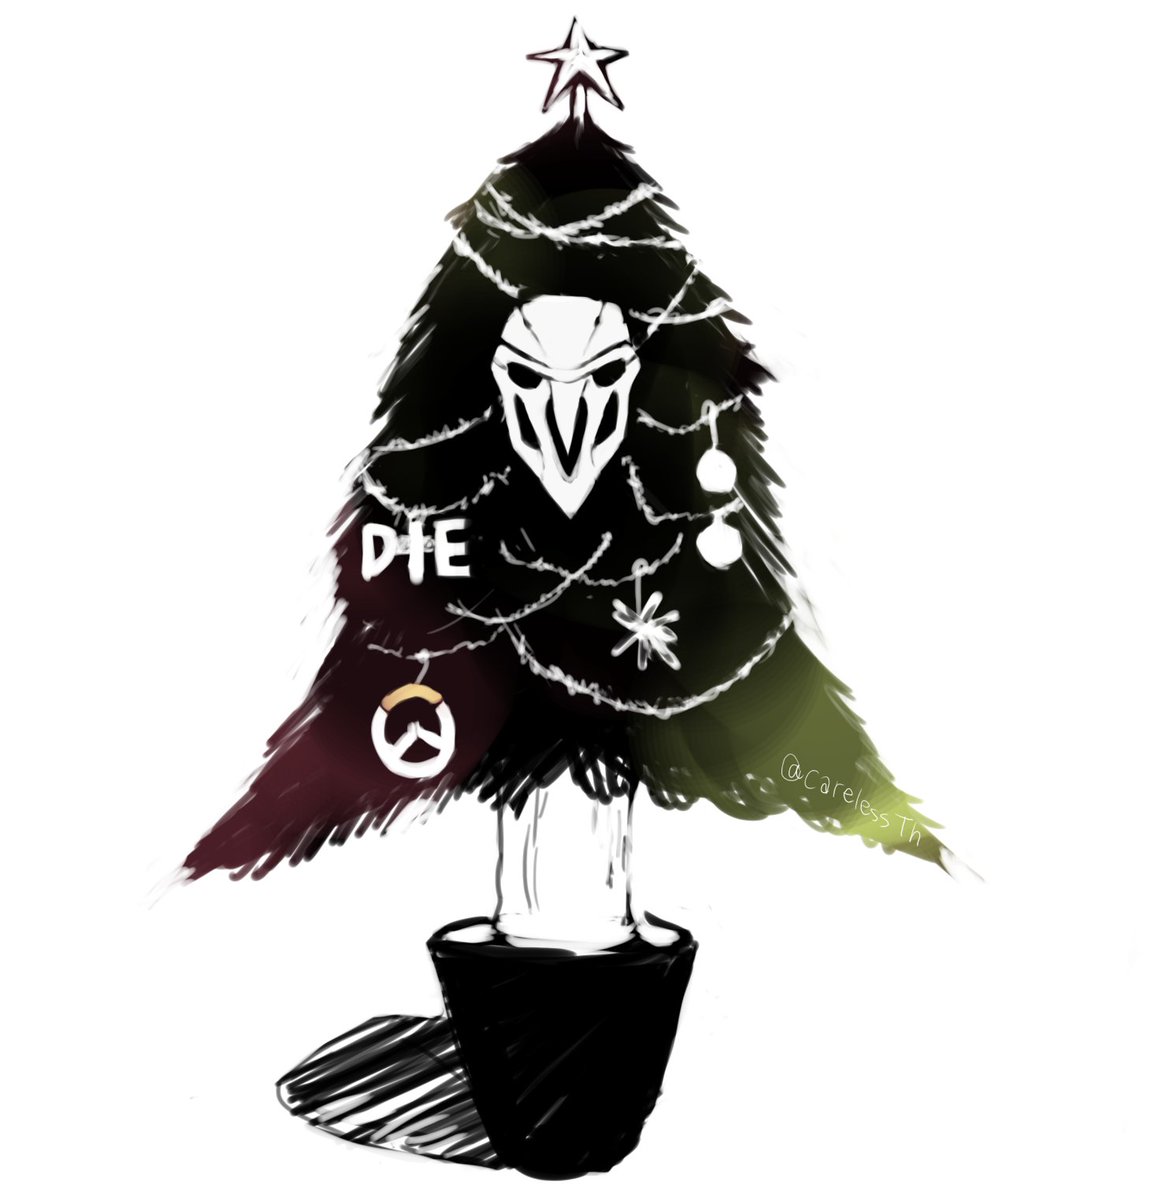 Thts クリスマスツリーと化したリーパーさん Overwatch オーバーウォッチ Owアート